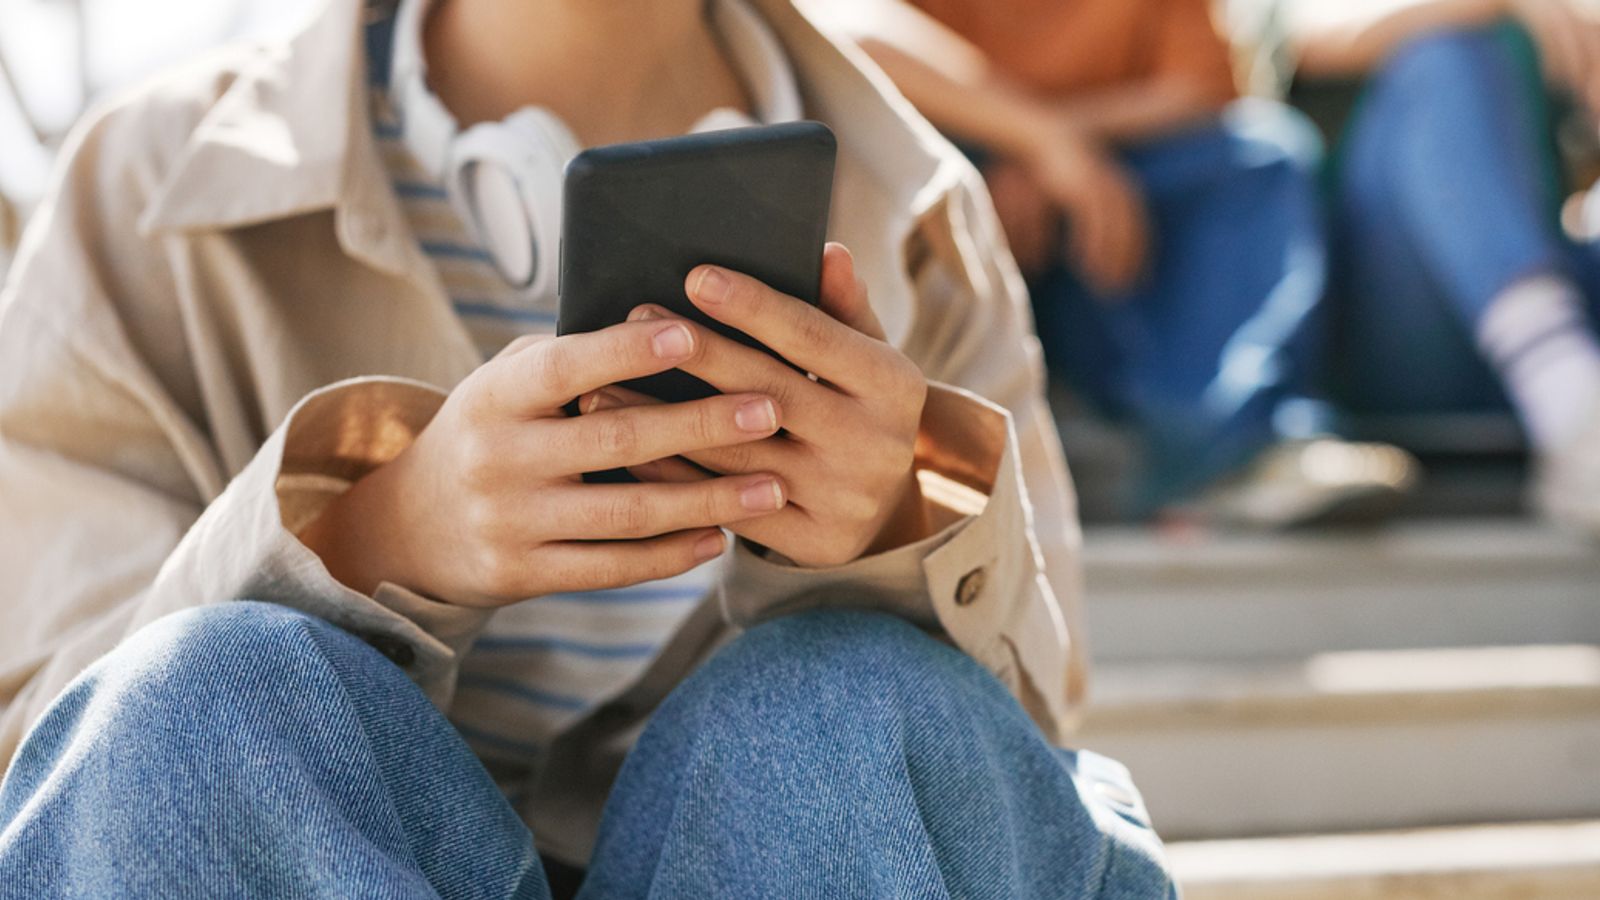 Забранете на лица под 16 години да използват смартфони, предлага депутатът от торите